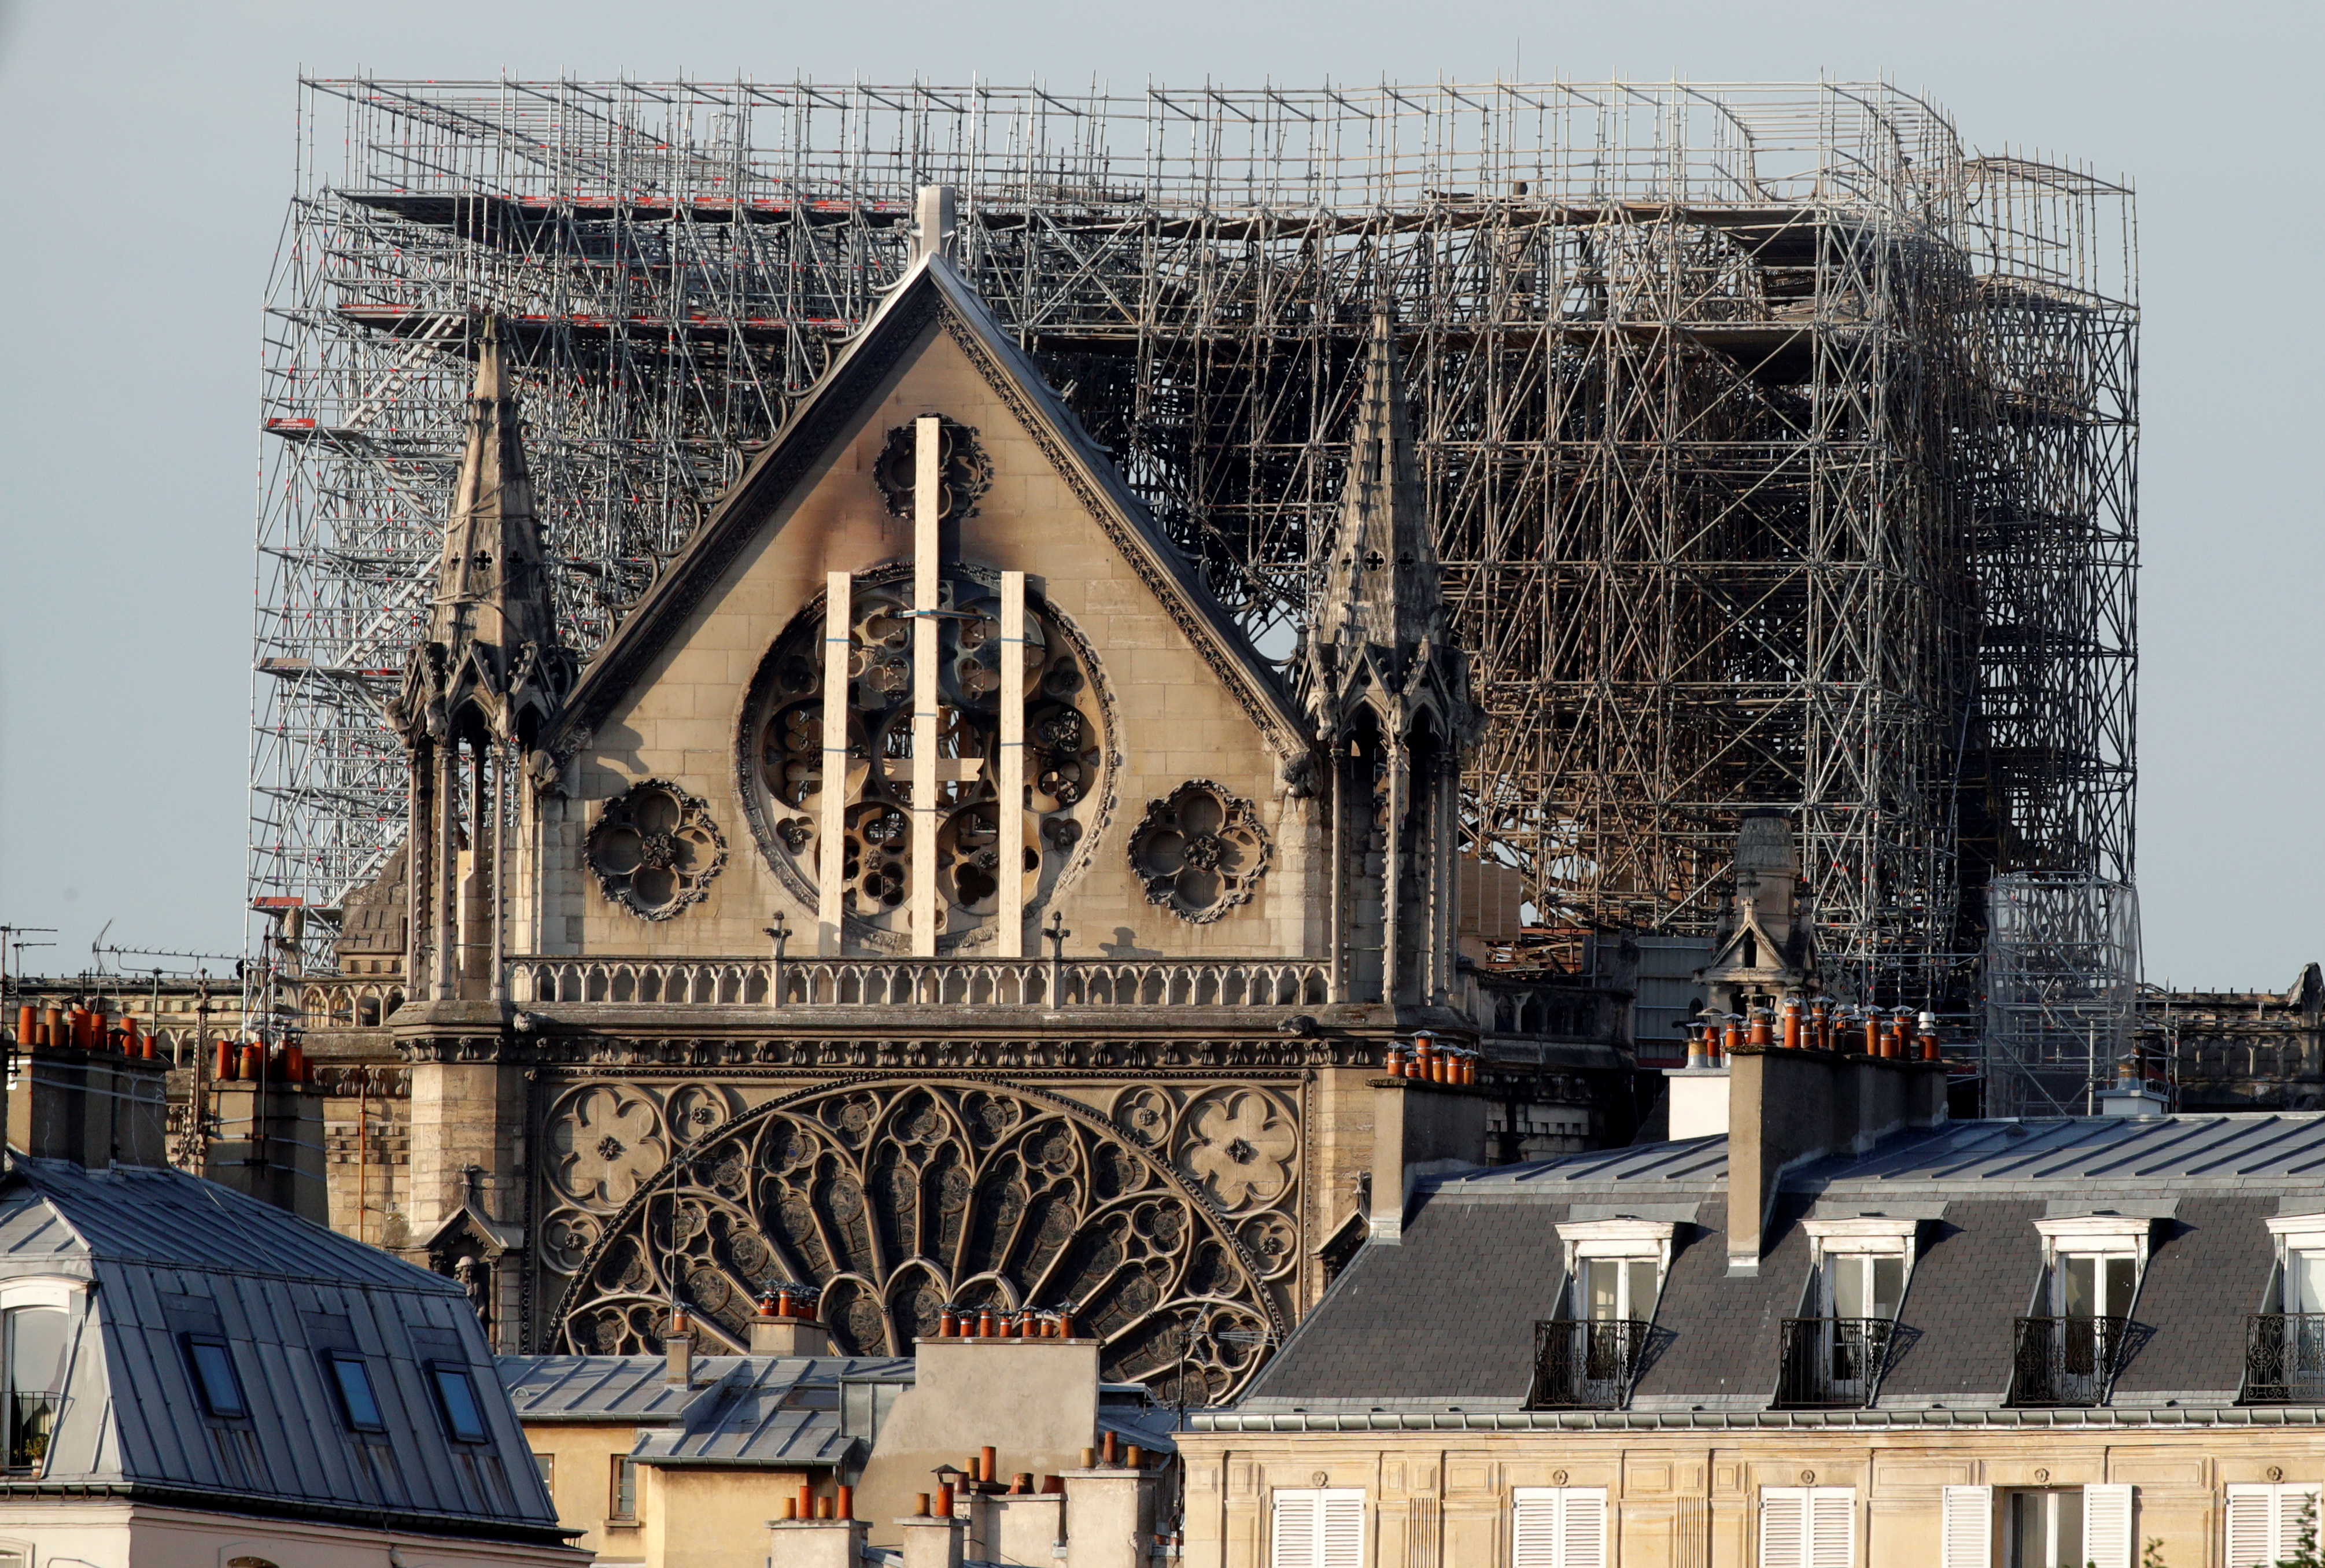 Un descubrimiento milagroso podría salvar el reloj de Notre Dame de París